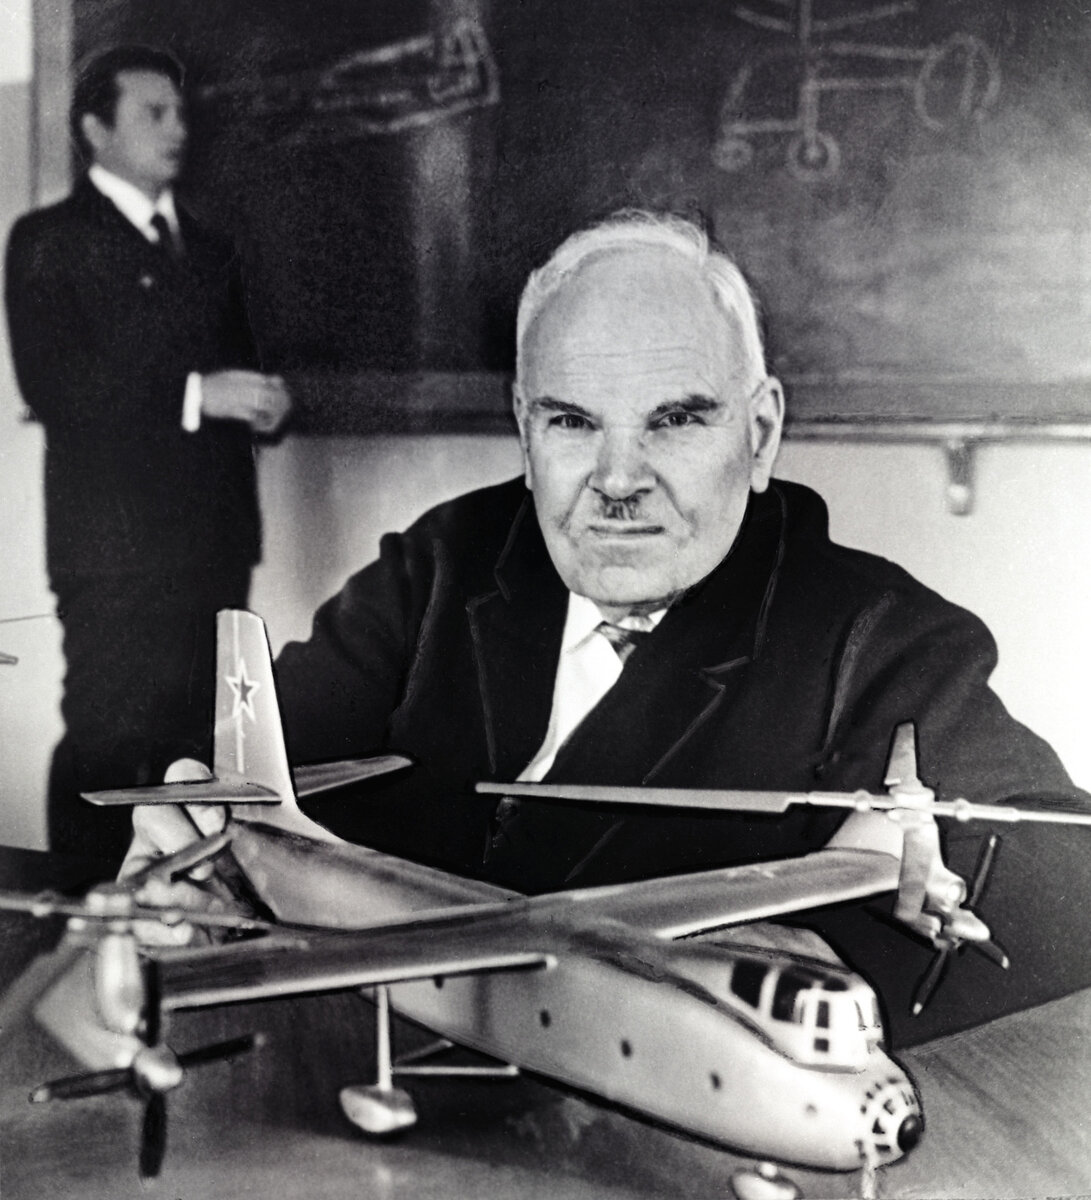    7 октября 1948 года было создано ОКБ-2, занимавшееся проектированием вертолётов, которое возглавил Николай Камов. За годы своего существования конструкторское бюро несколько раз реорганизовывалось / РИА Новости / РИА Новости